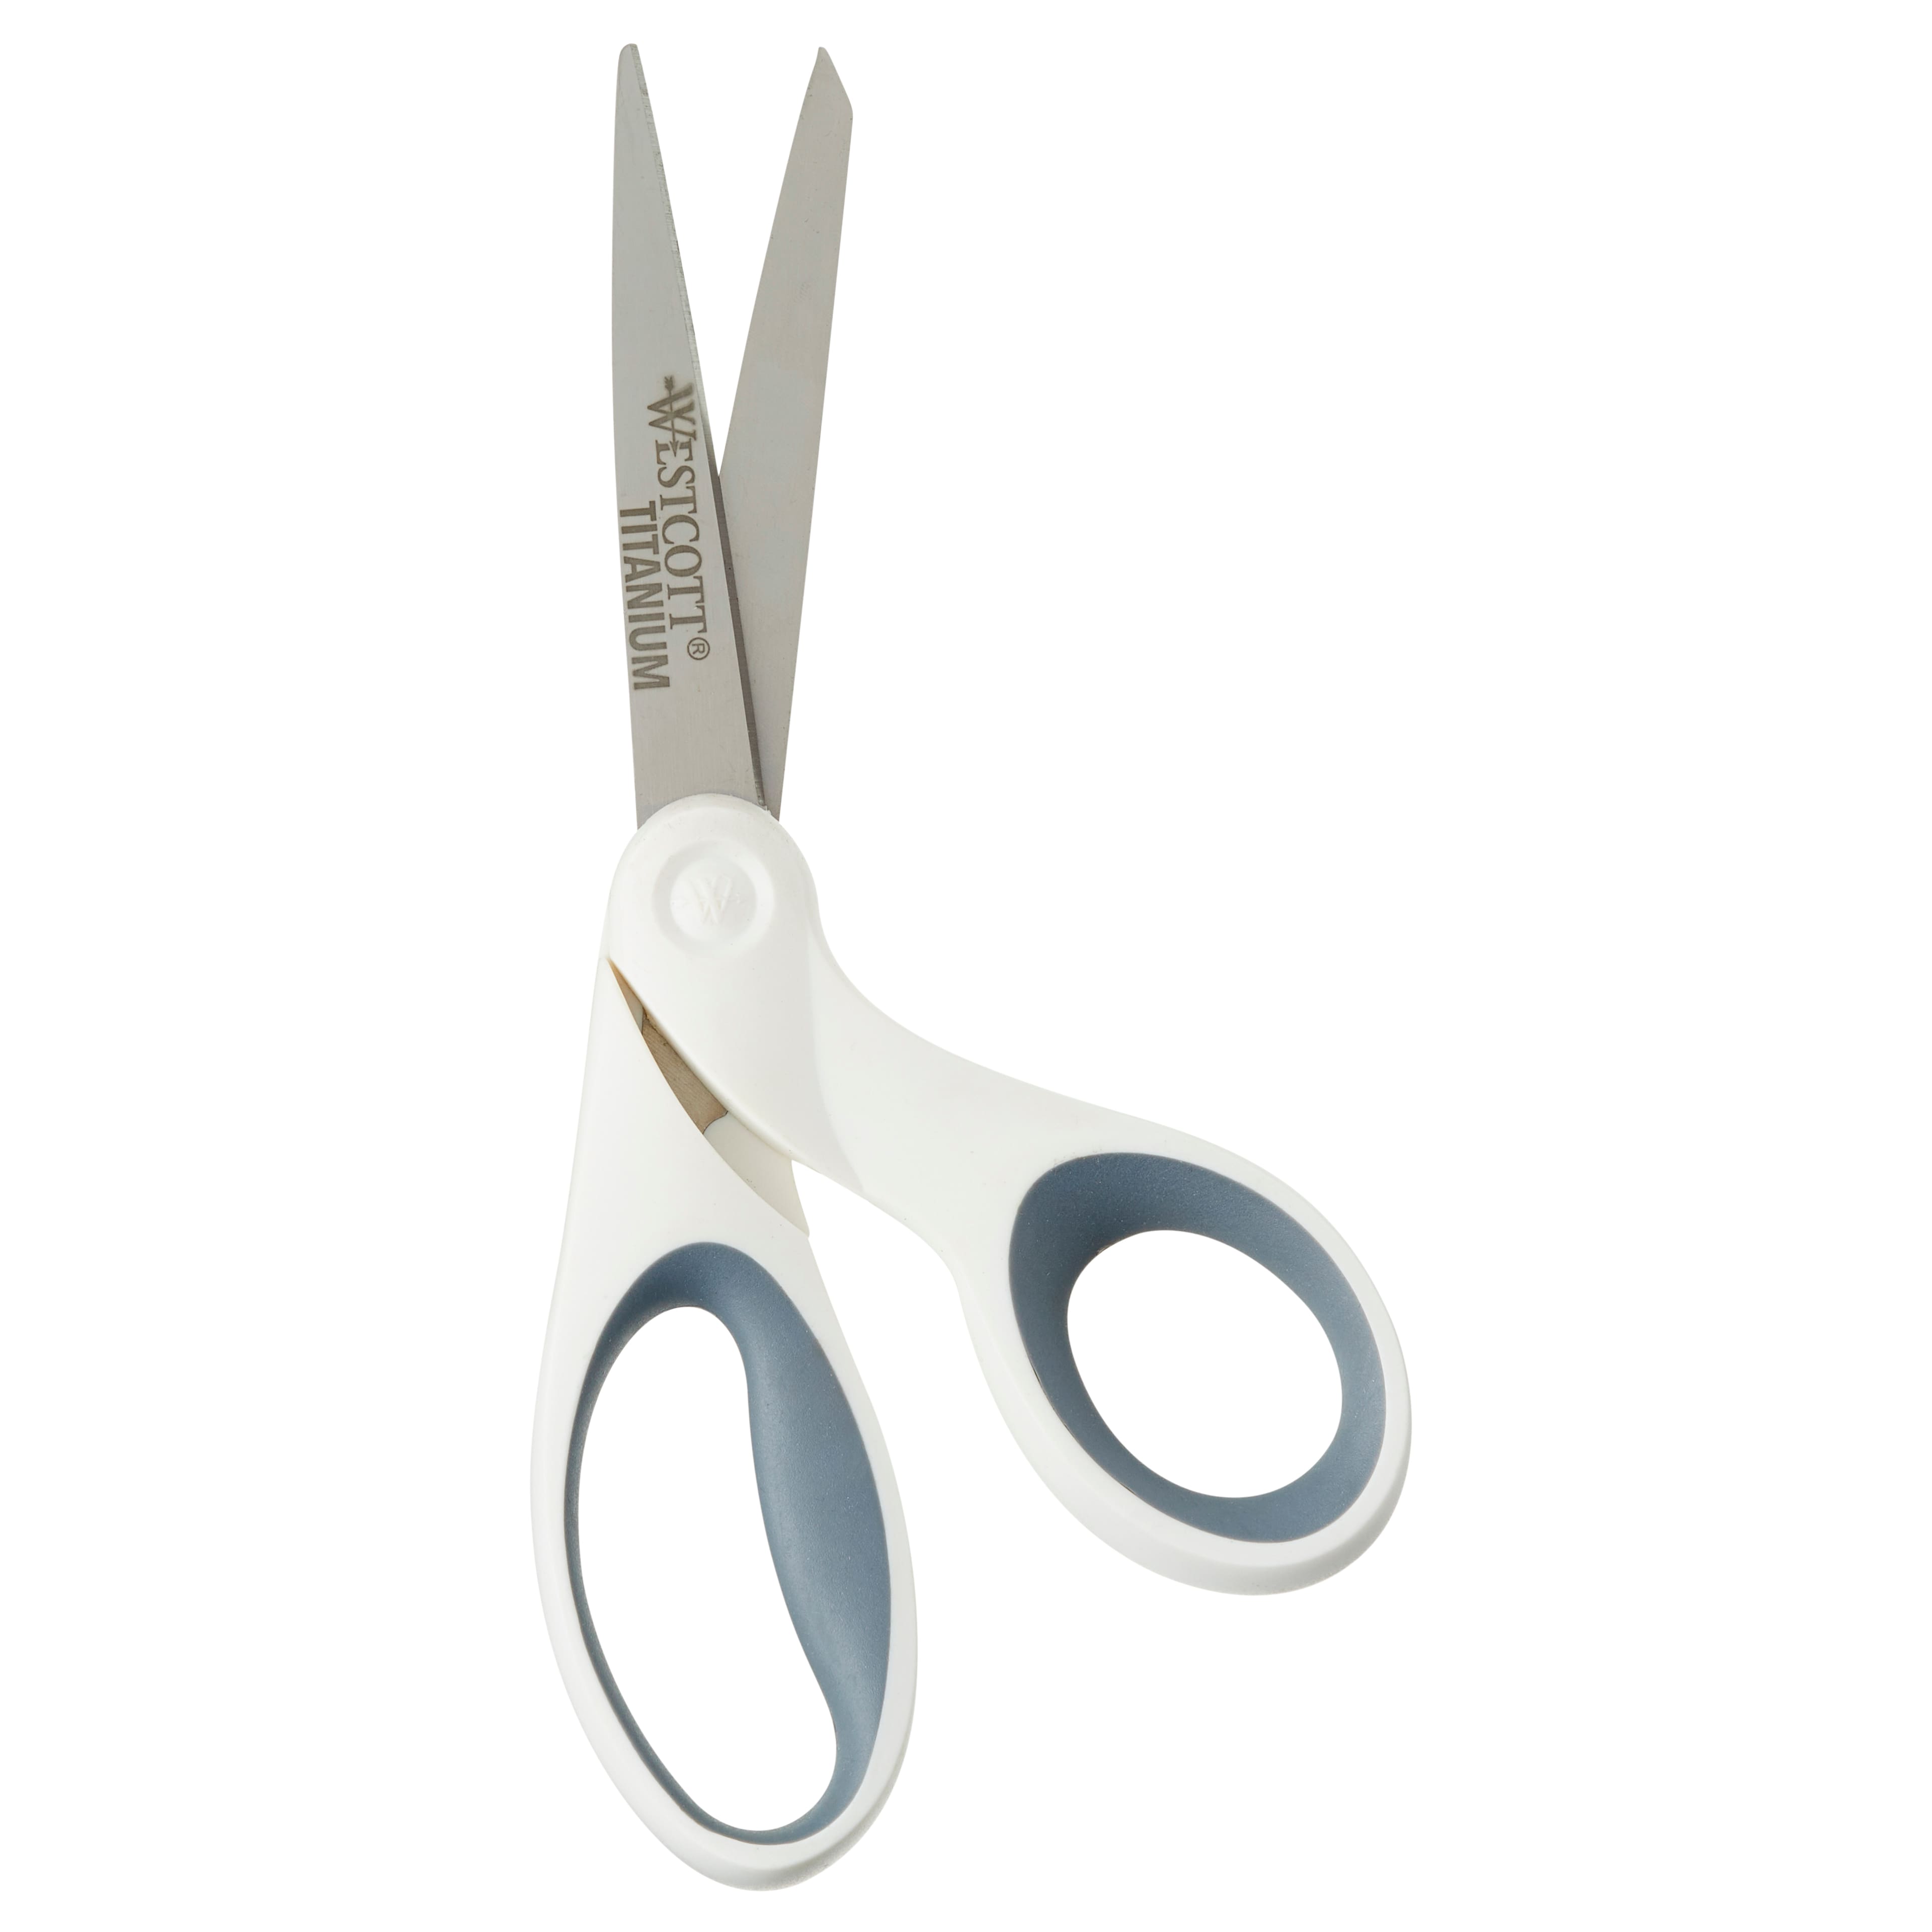 Westcott Carbo Titanium 9 Bent Scissors with Serrated Blade | Michaels